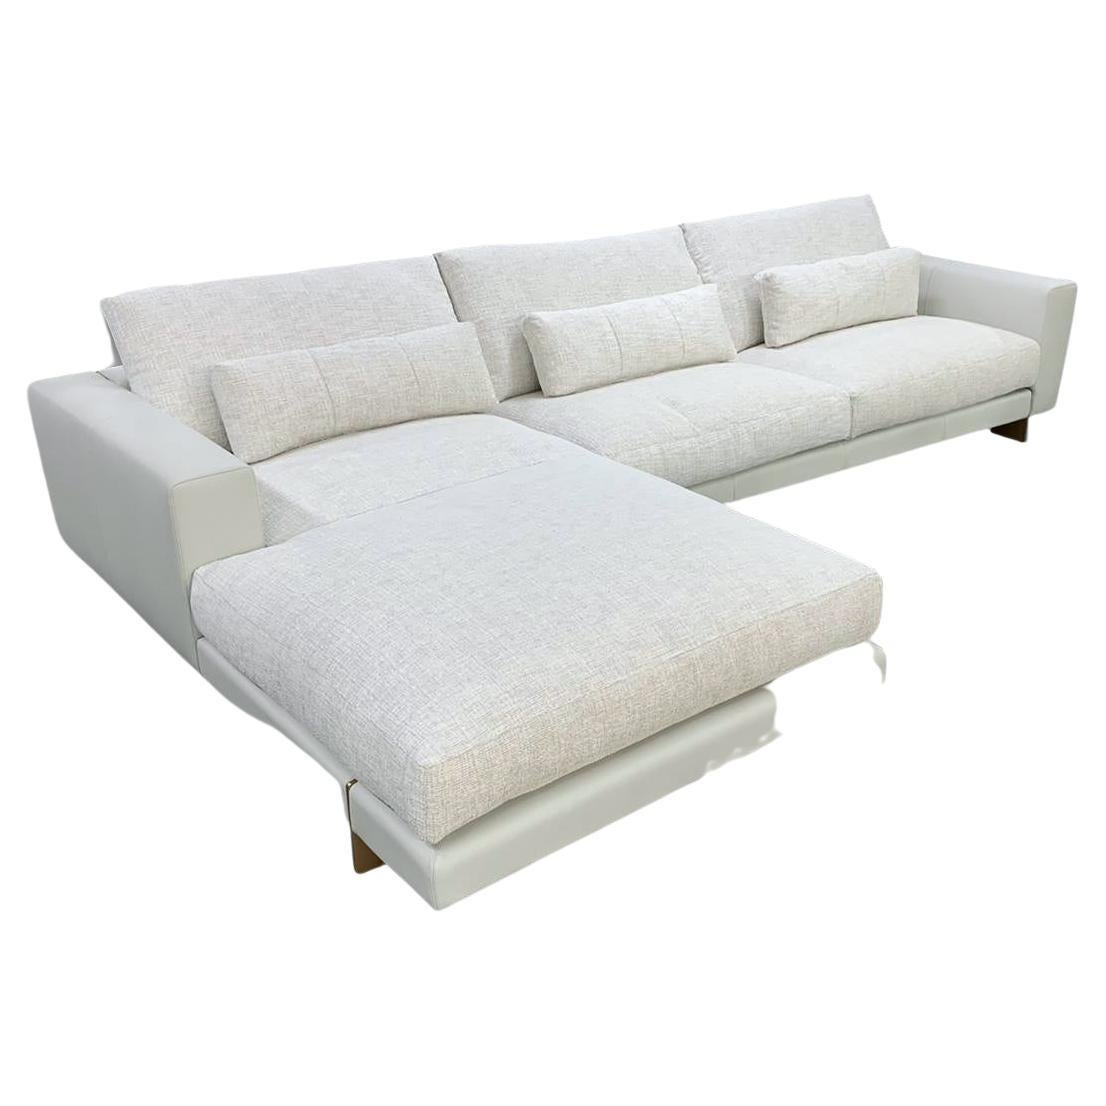 DIVO Canapé sectionnel Contemporary Sofa